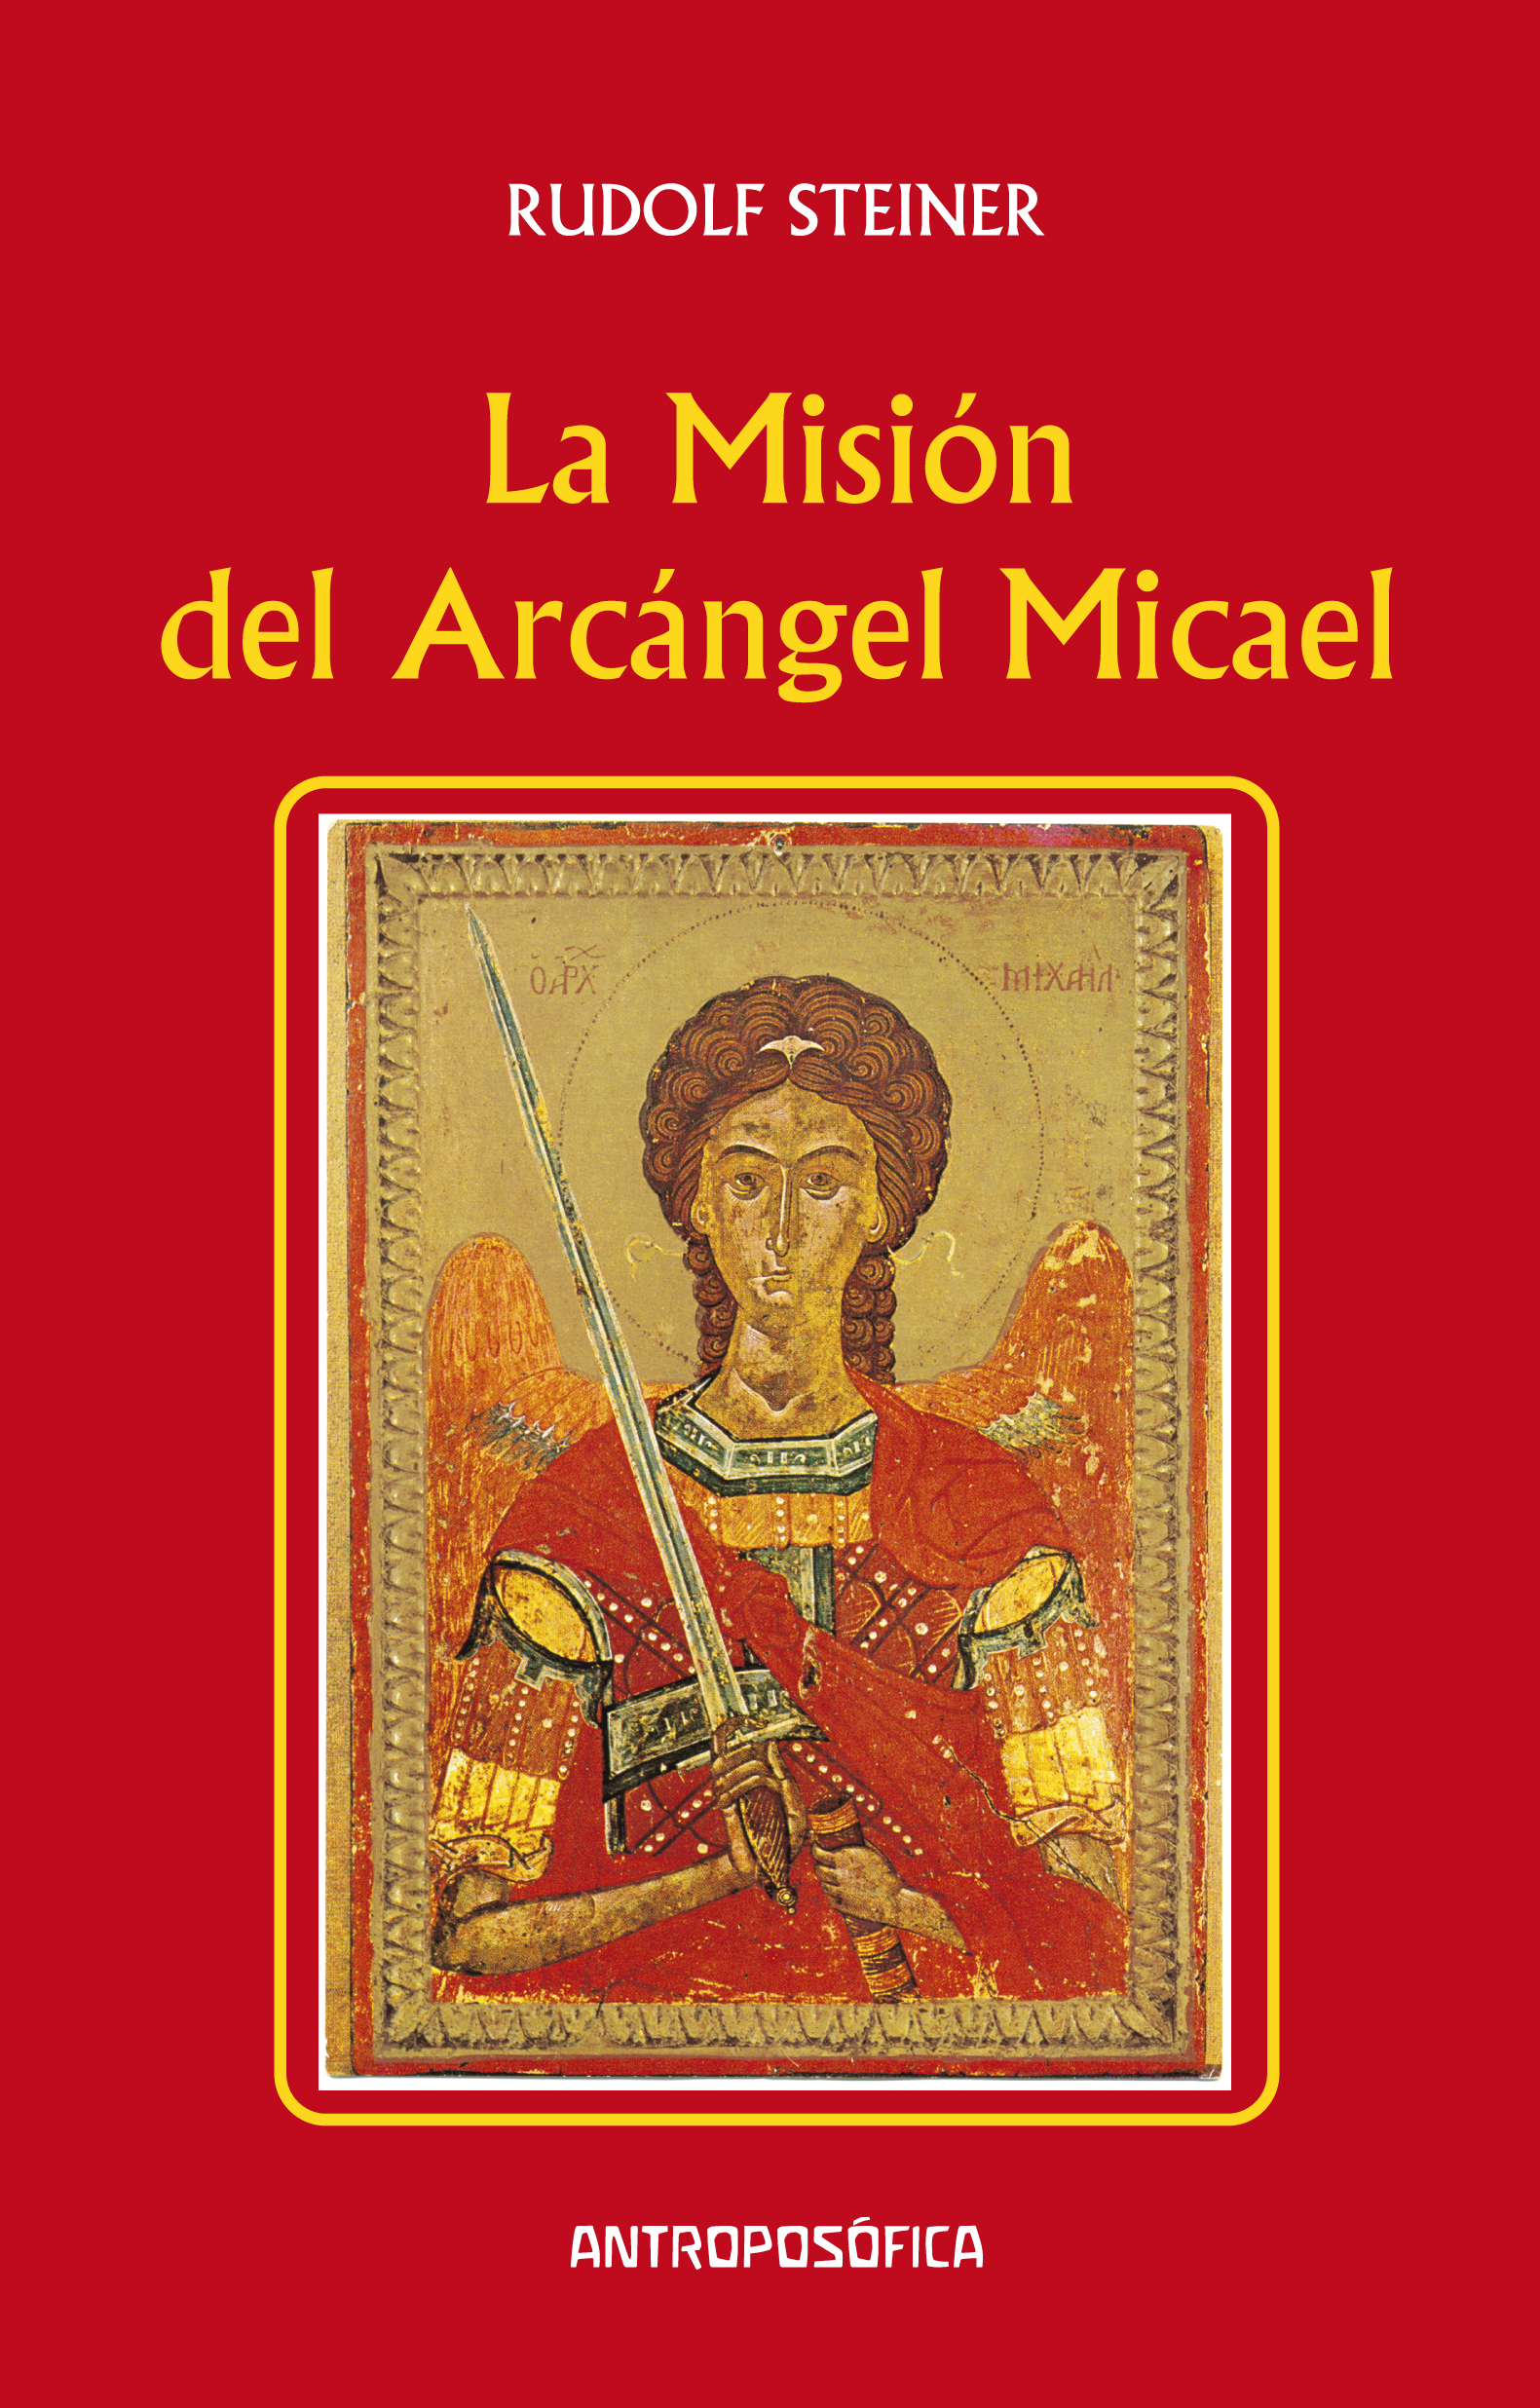 
            La misión del arcángel Micael